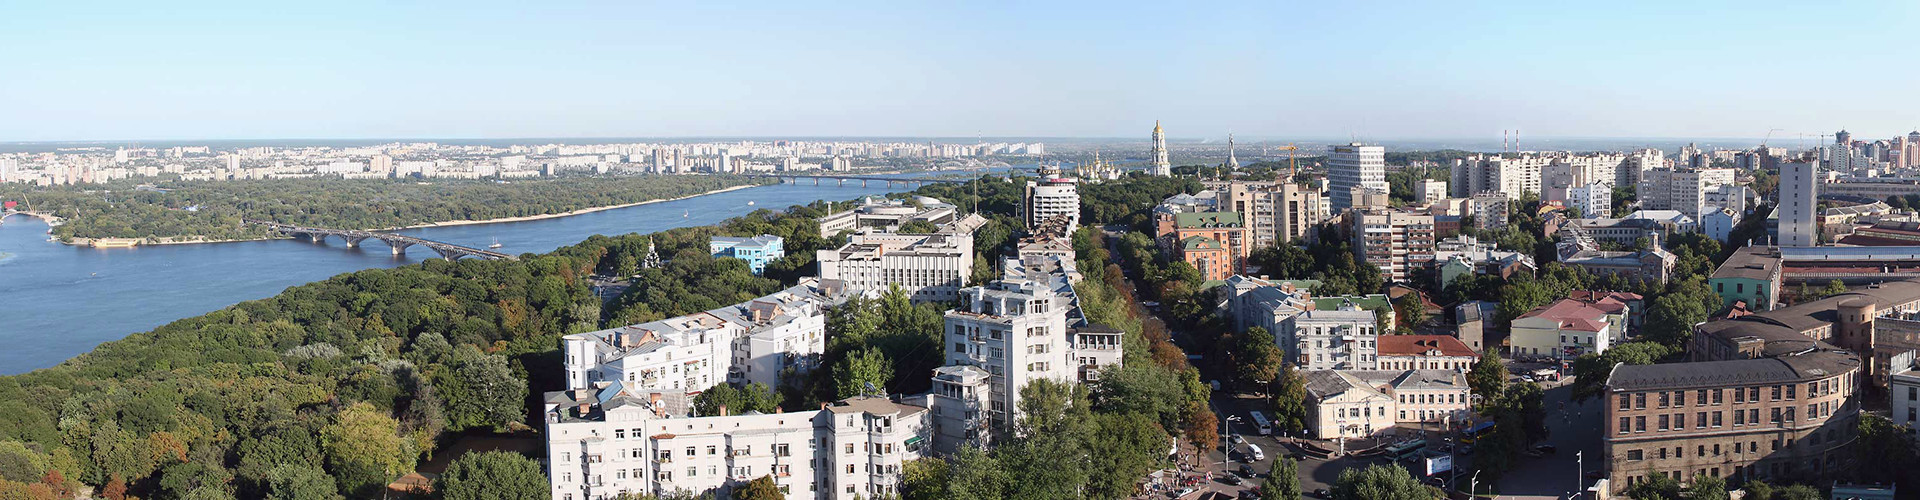 Kiev real estate>